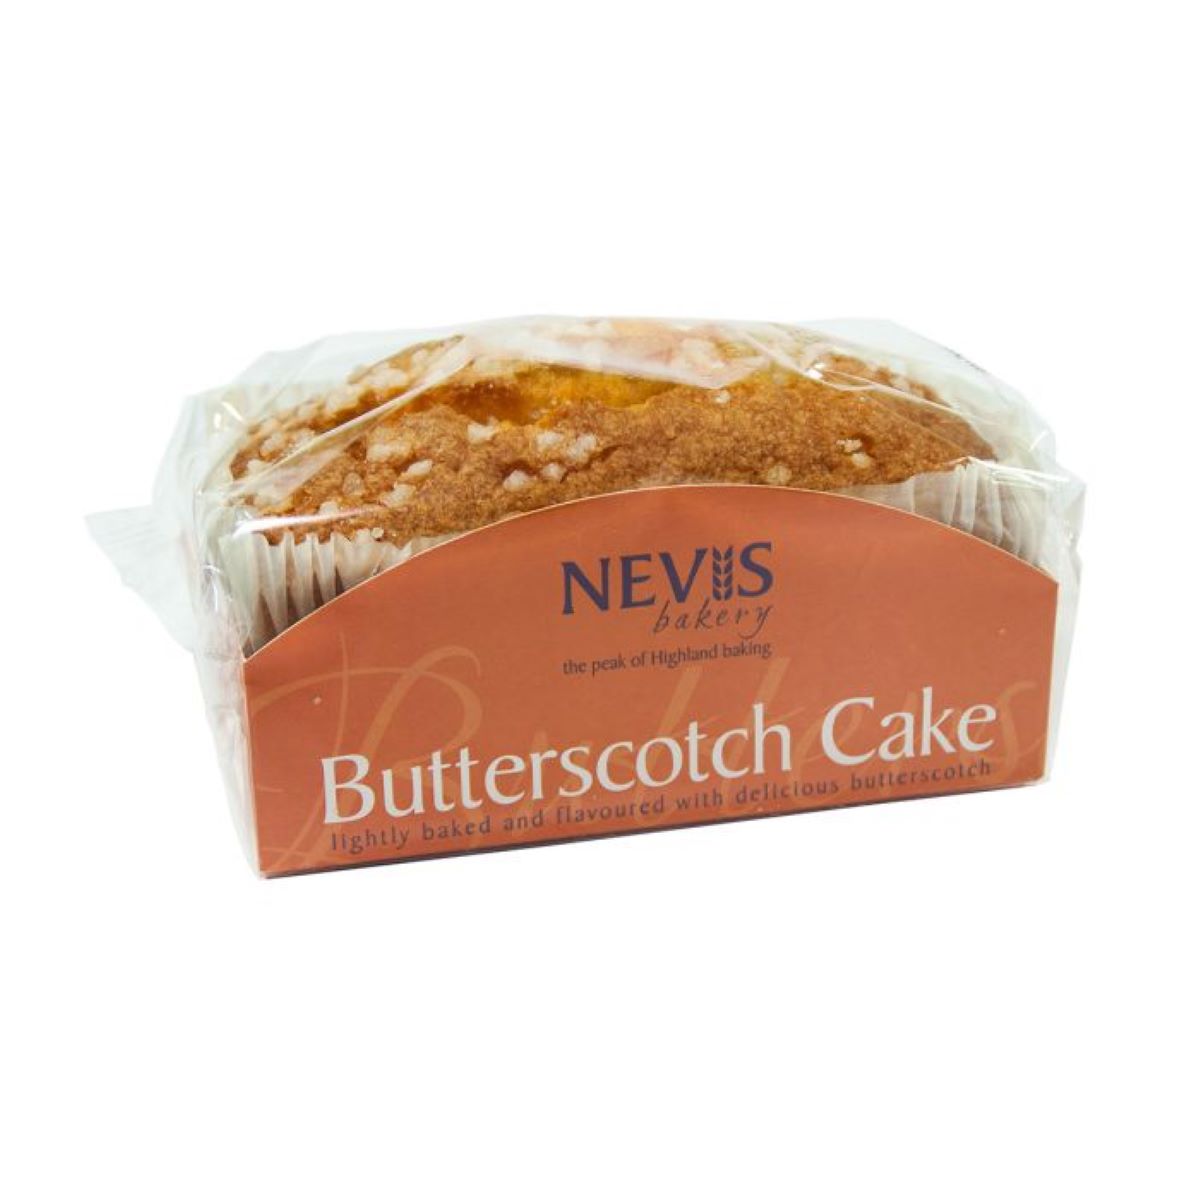 Nevis Butterscotch Cake 350g